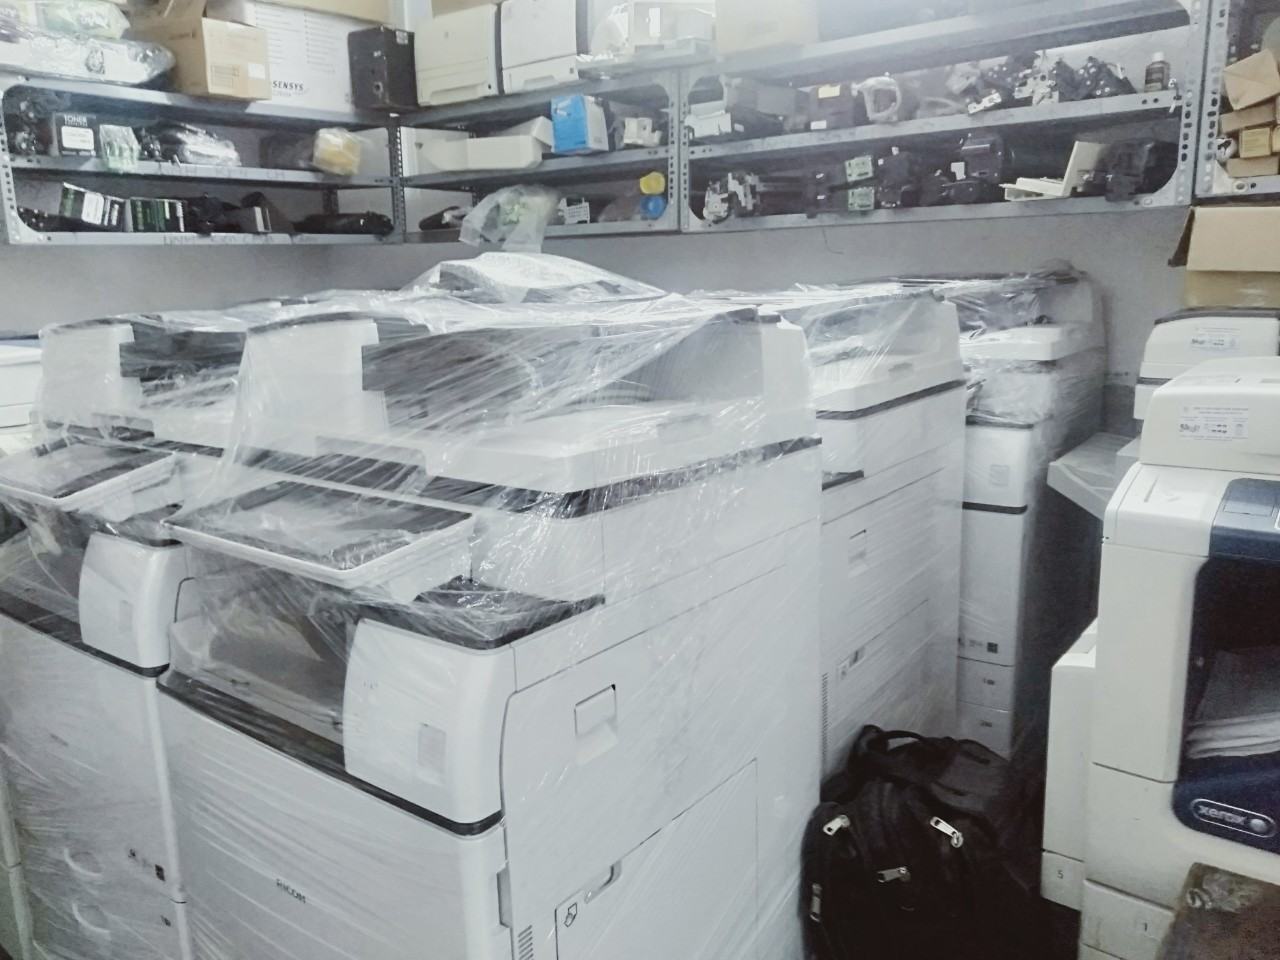 Bán máy photocopy, máy photo nhập khẩu giá rẻ uy tín, chất lượng cao tại Hà Nội và các tỉnh thành cả nước